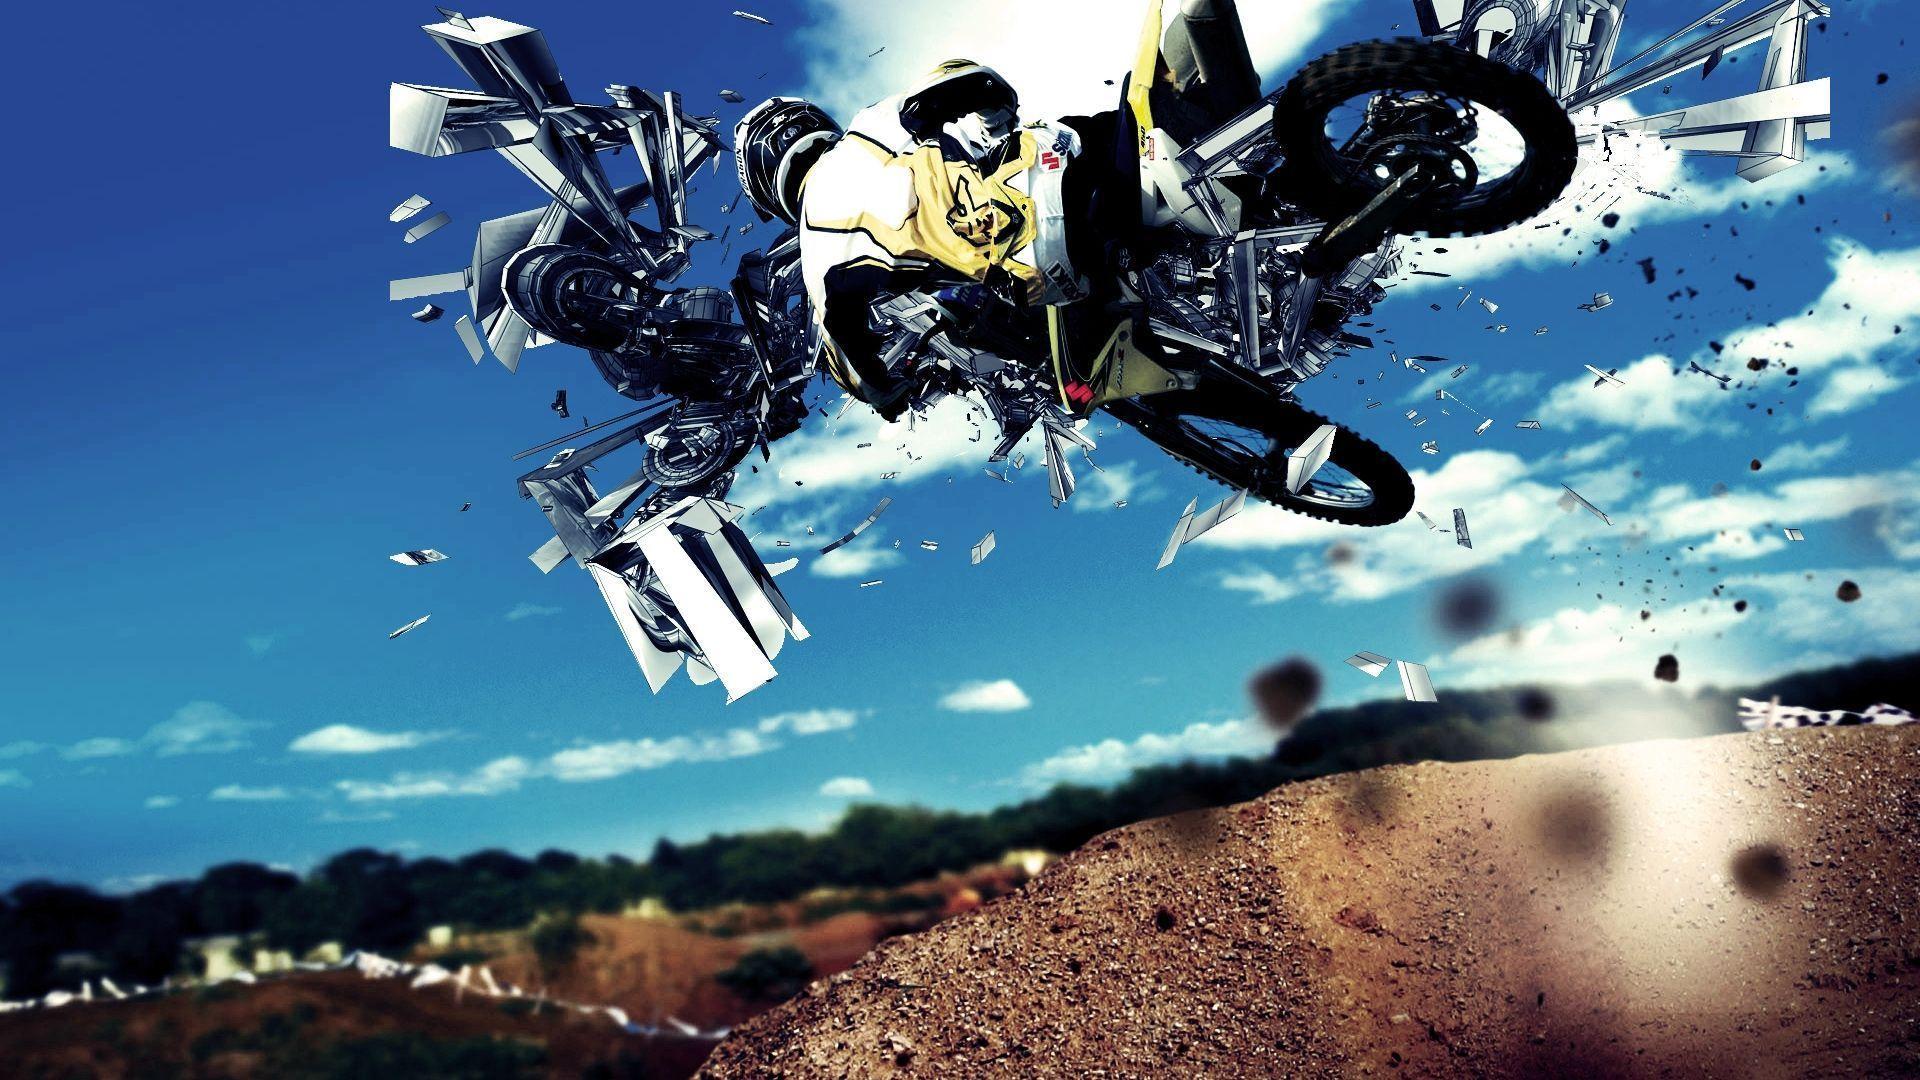 Motocross Bakgrundsbilder